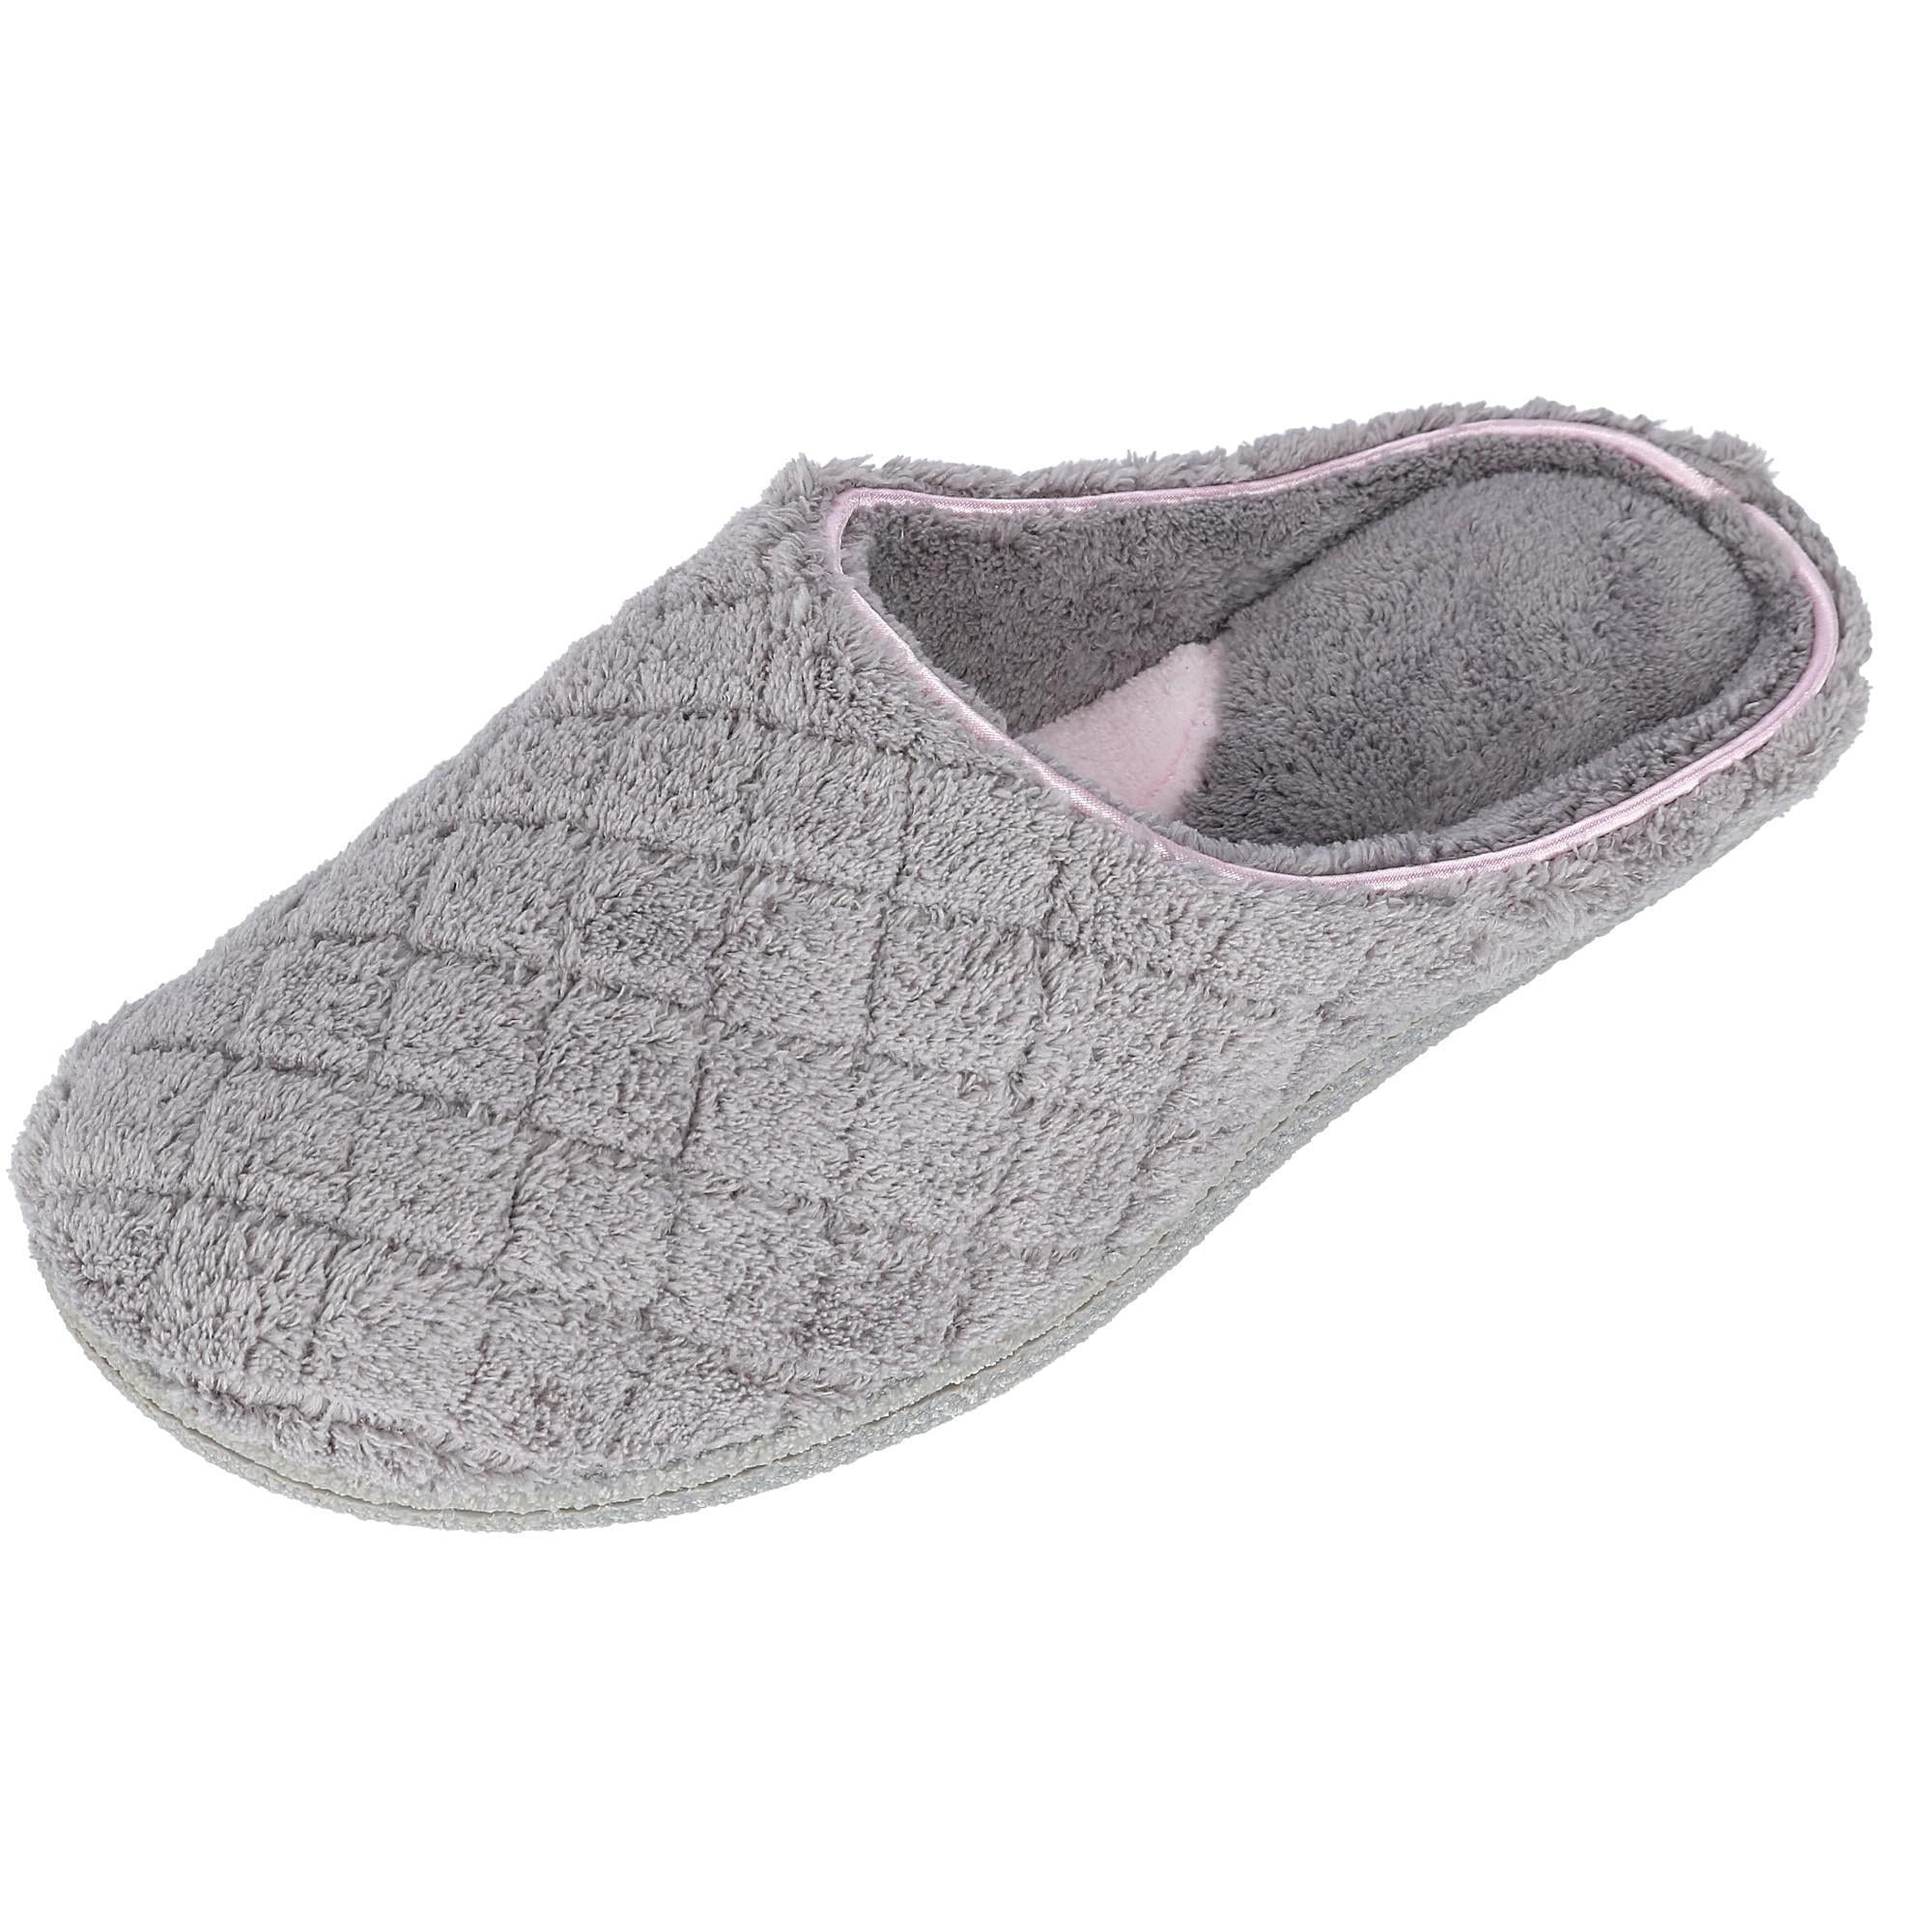 dearfoam microfiber slippers